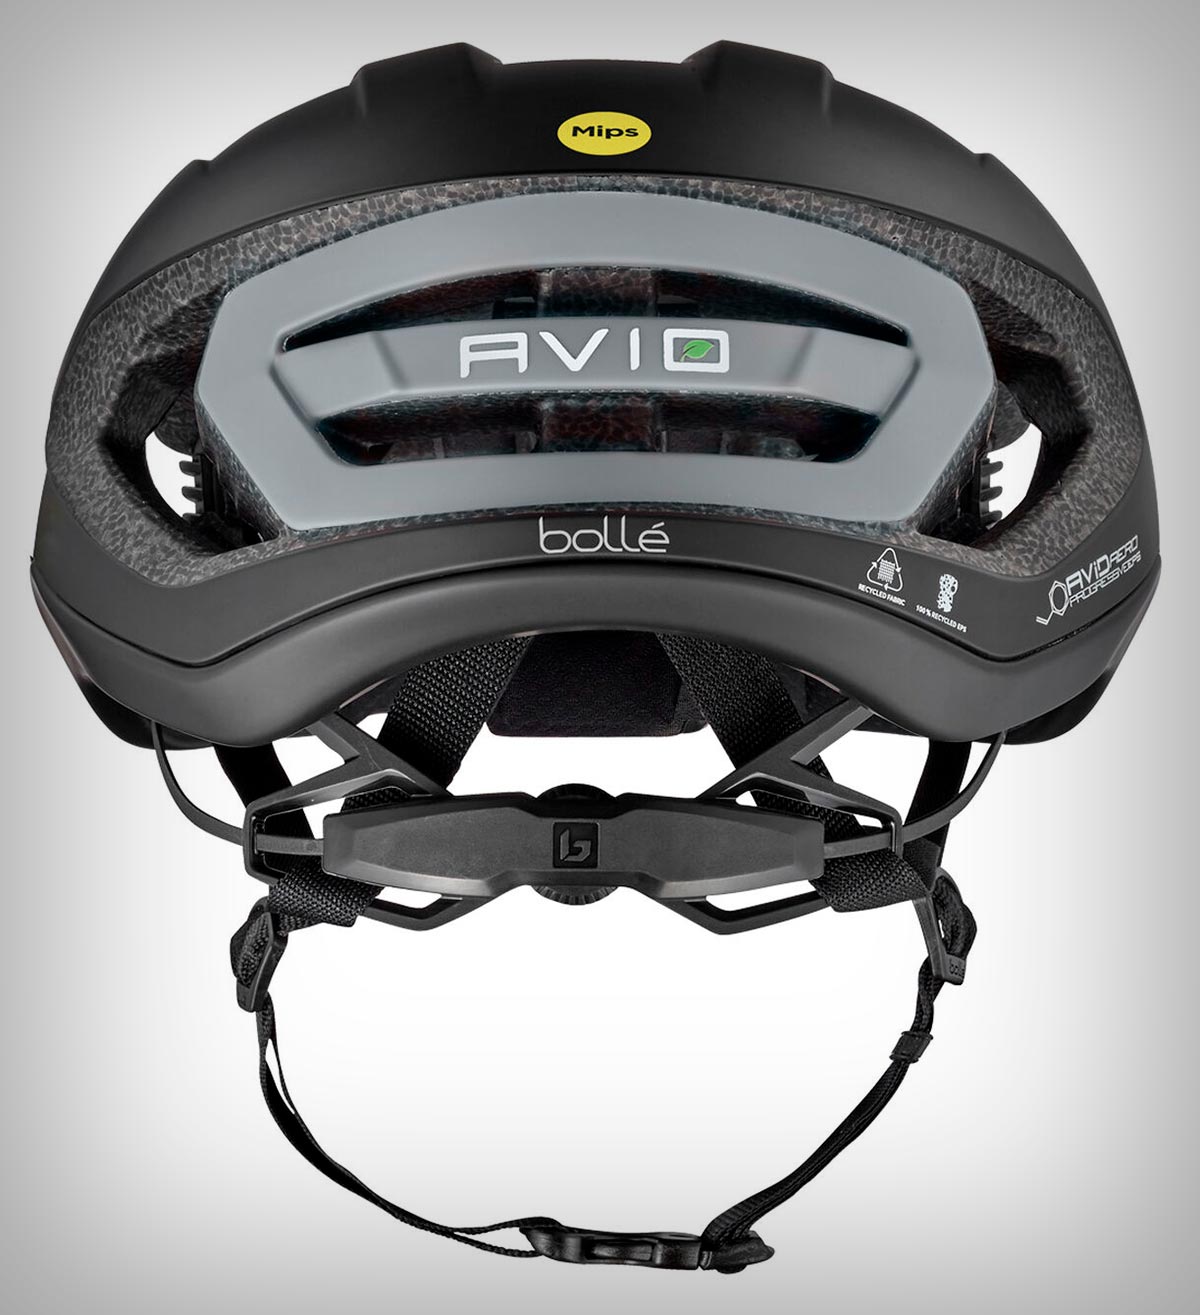 Bollé Eco Avio MIPS, el primer casco para gravel de la marca ya está aquí